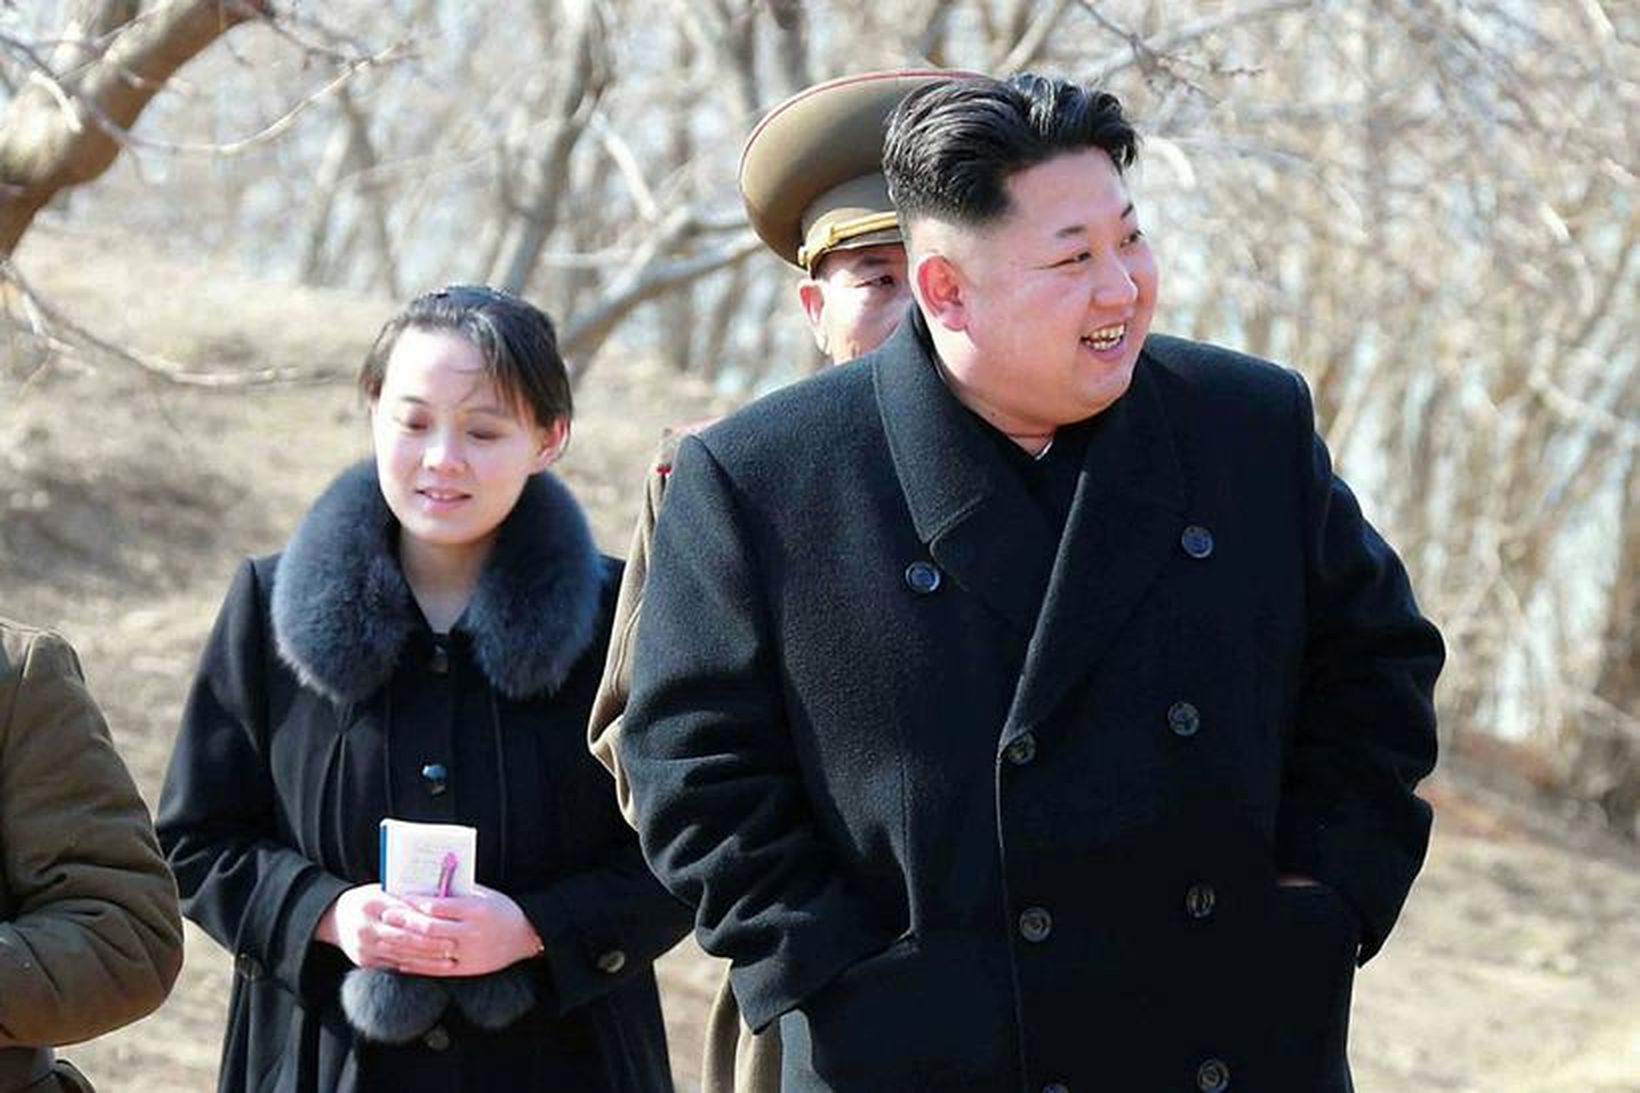 Kim Jong-un ásamt systur sinni Kim Yo-Jong.